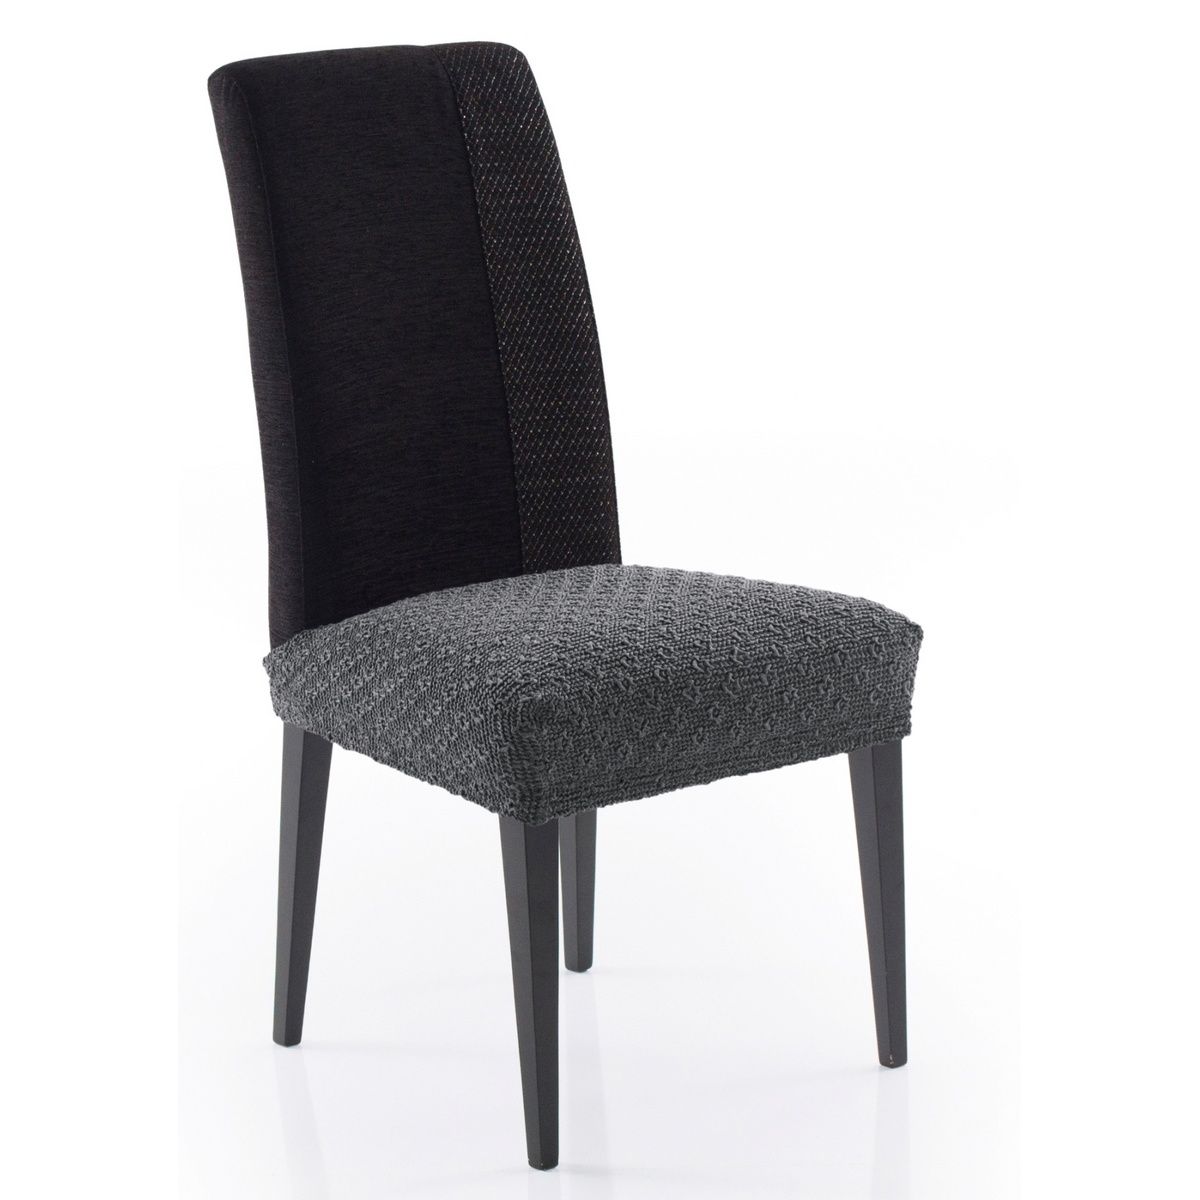 Forbyt Multielastický potah na sedák na židli Martin tmavě šedá, 50 x 60 cm, sada 2 ks - 4home.cz